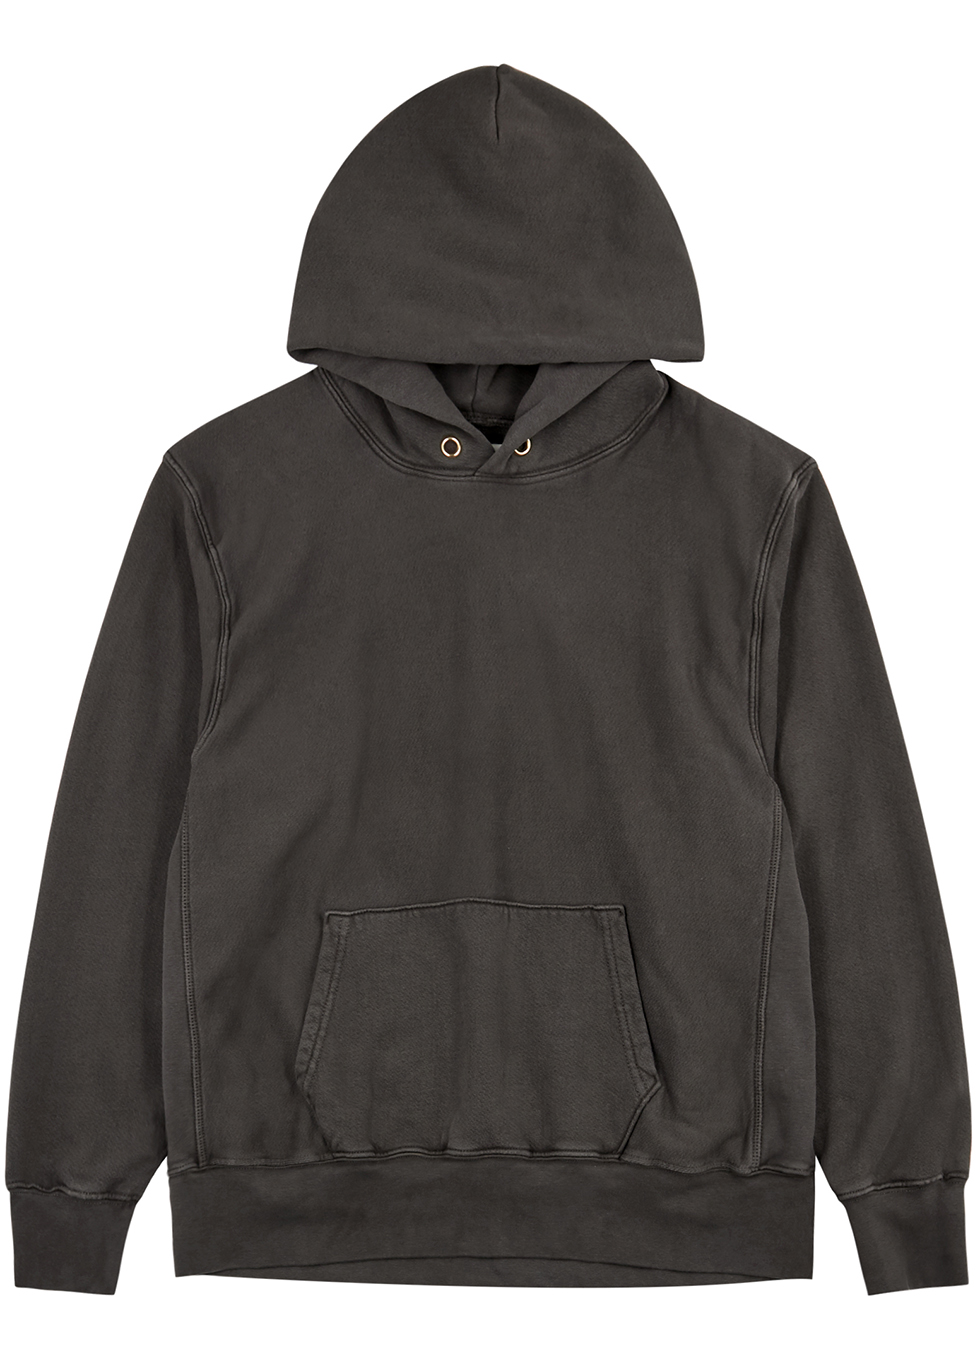 Charcoal hooded cotton sweatshirt